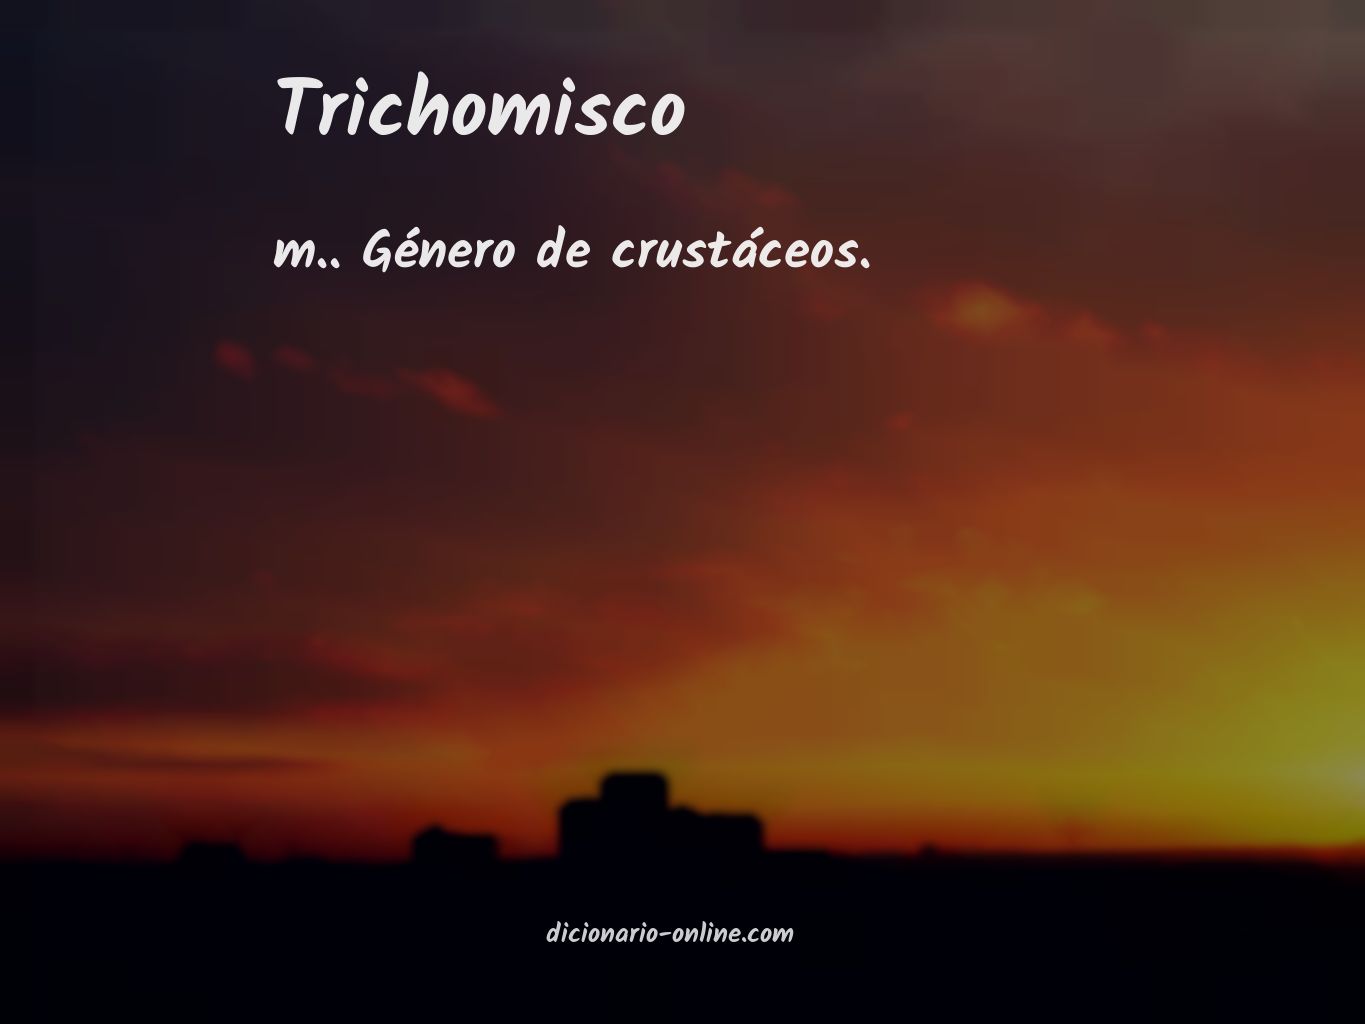 Significado de trichomisco